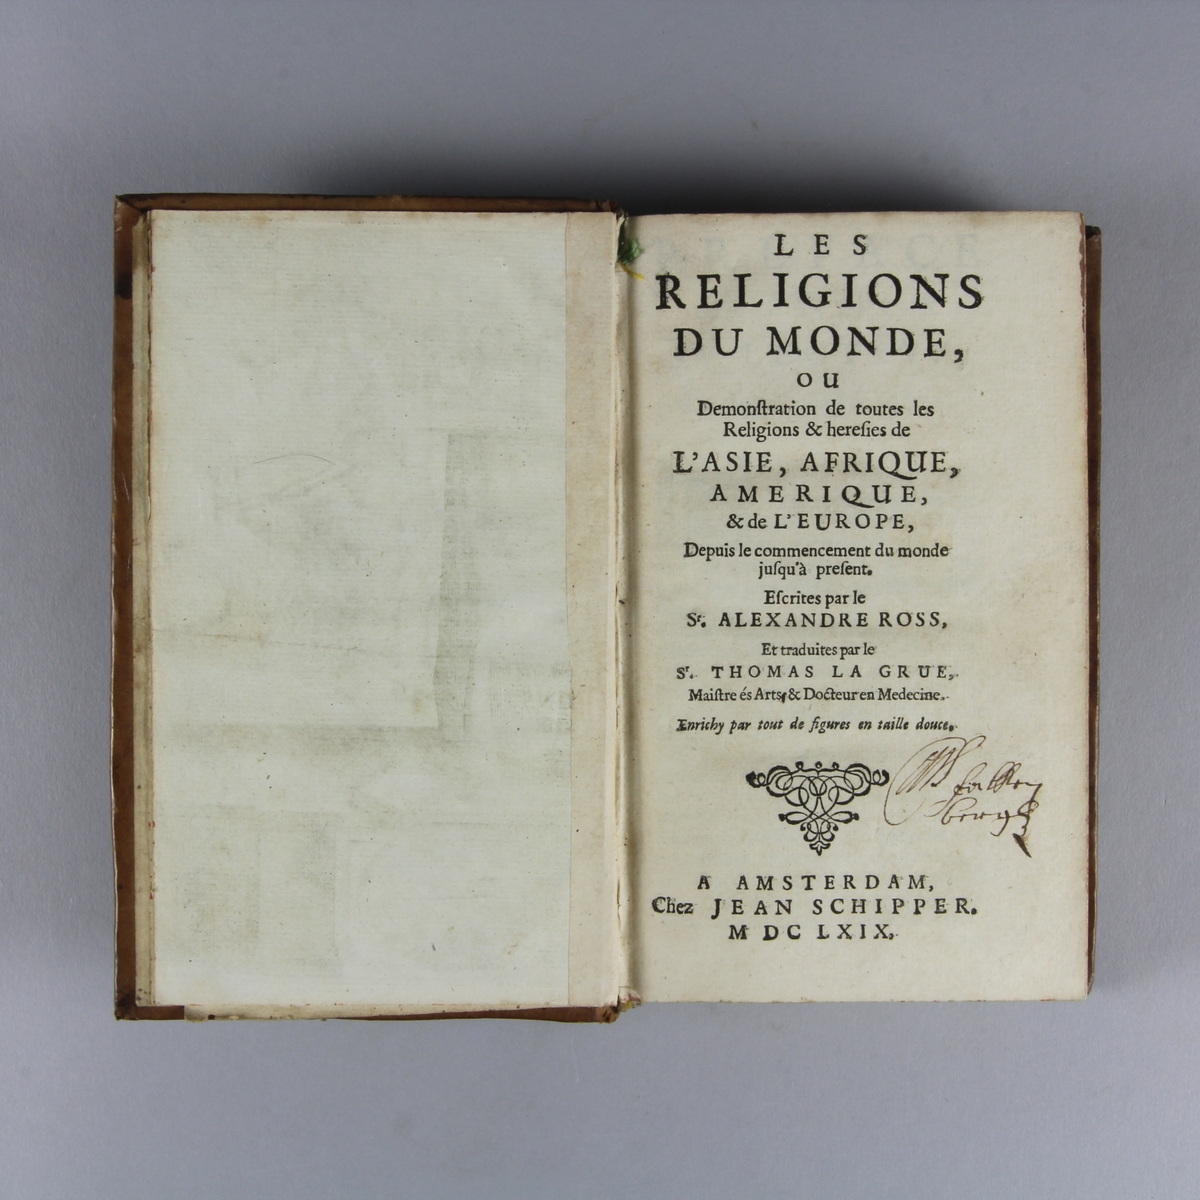 Bok, helfranskt band, "Les religions du monde", del 1. Skinnband med guldpräglad rygg i fem upphöjda bind, skuret rödstänkt snitt. Anteckning om inköp.